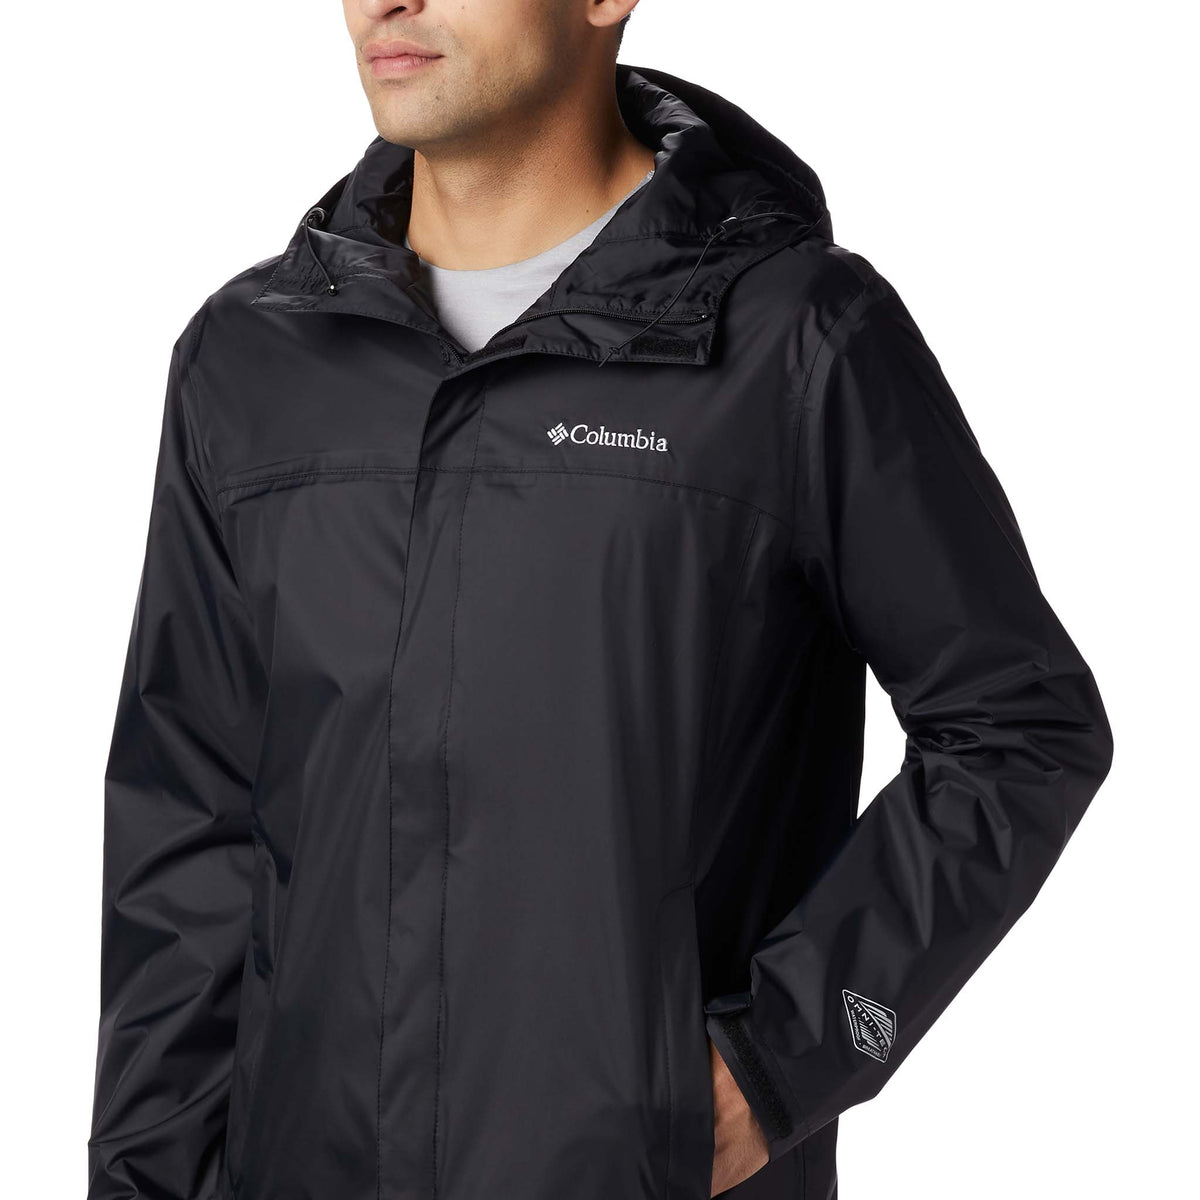 Columbia Watertight II manteau de pluie pour homme noir detail